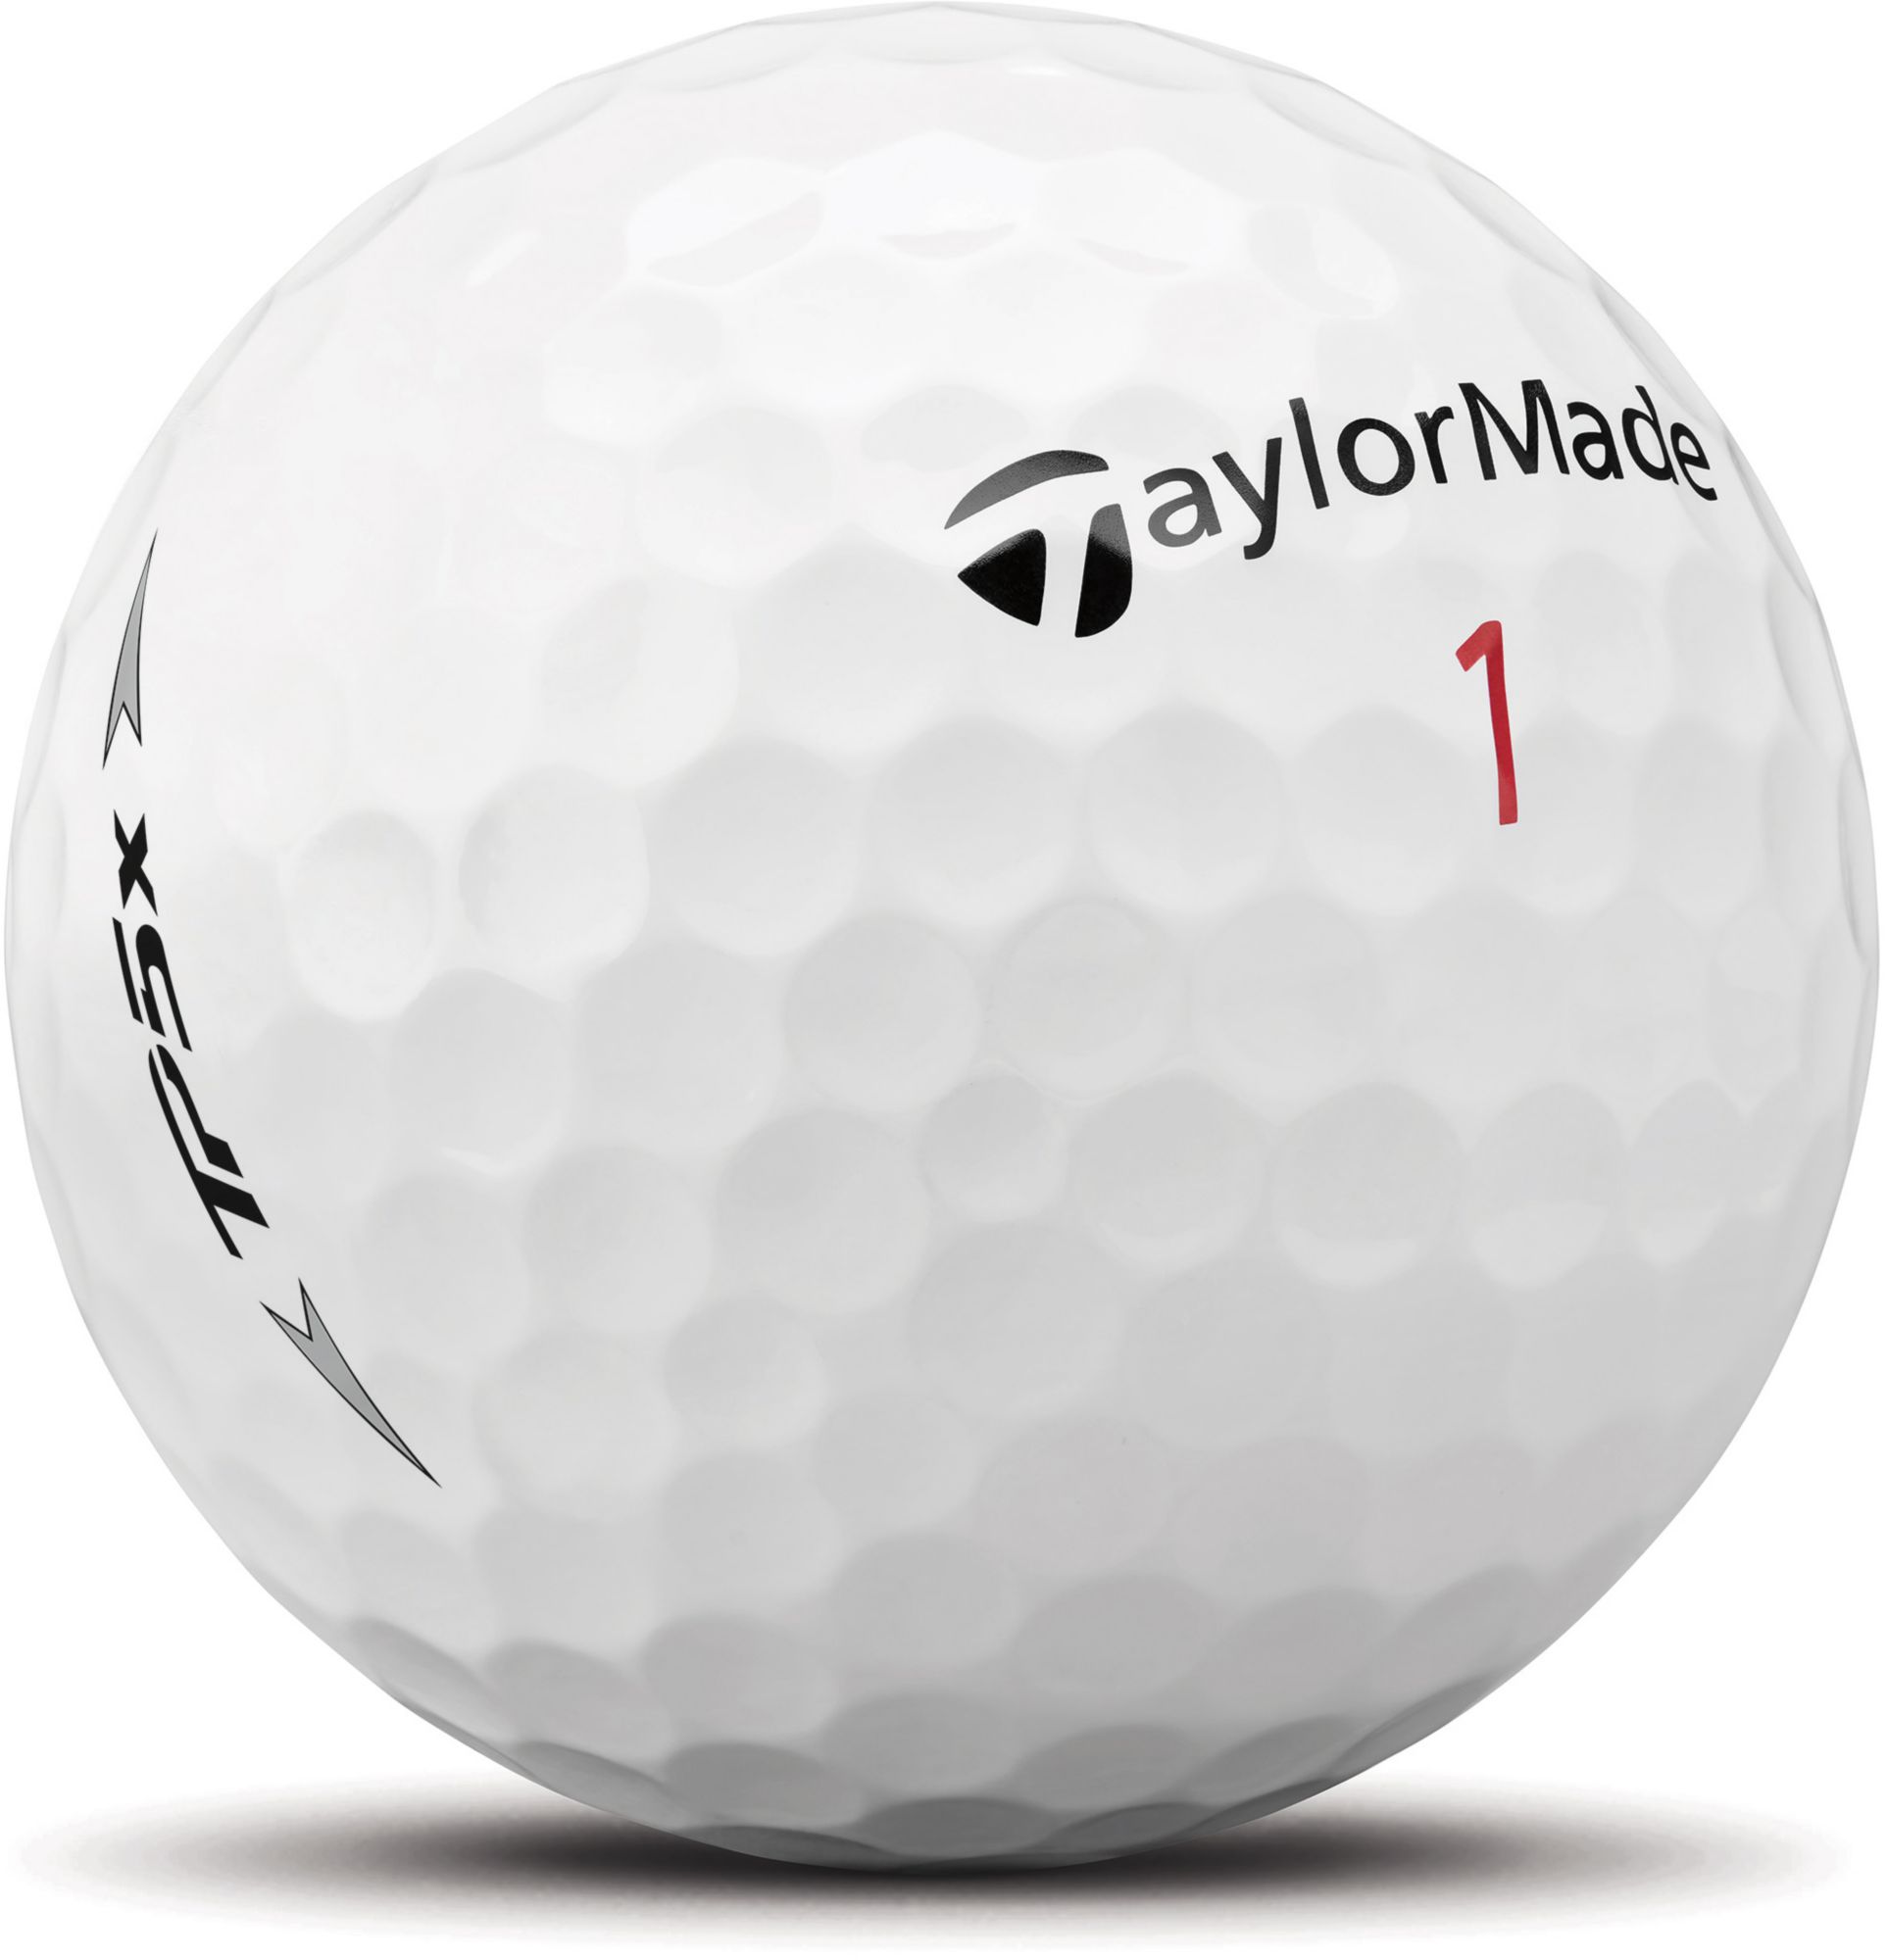 TaylorMade 2020 TP5x Golf Balls - 3 